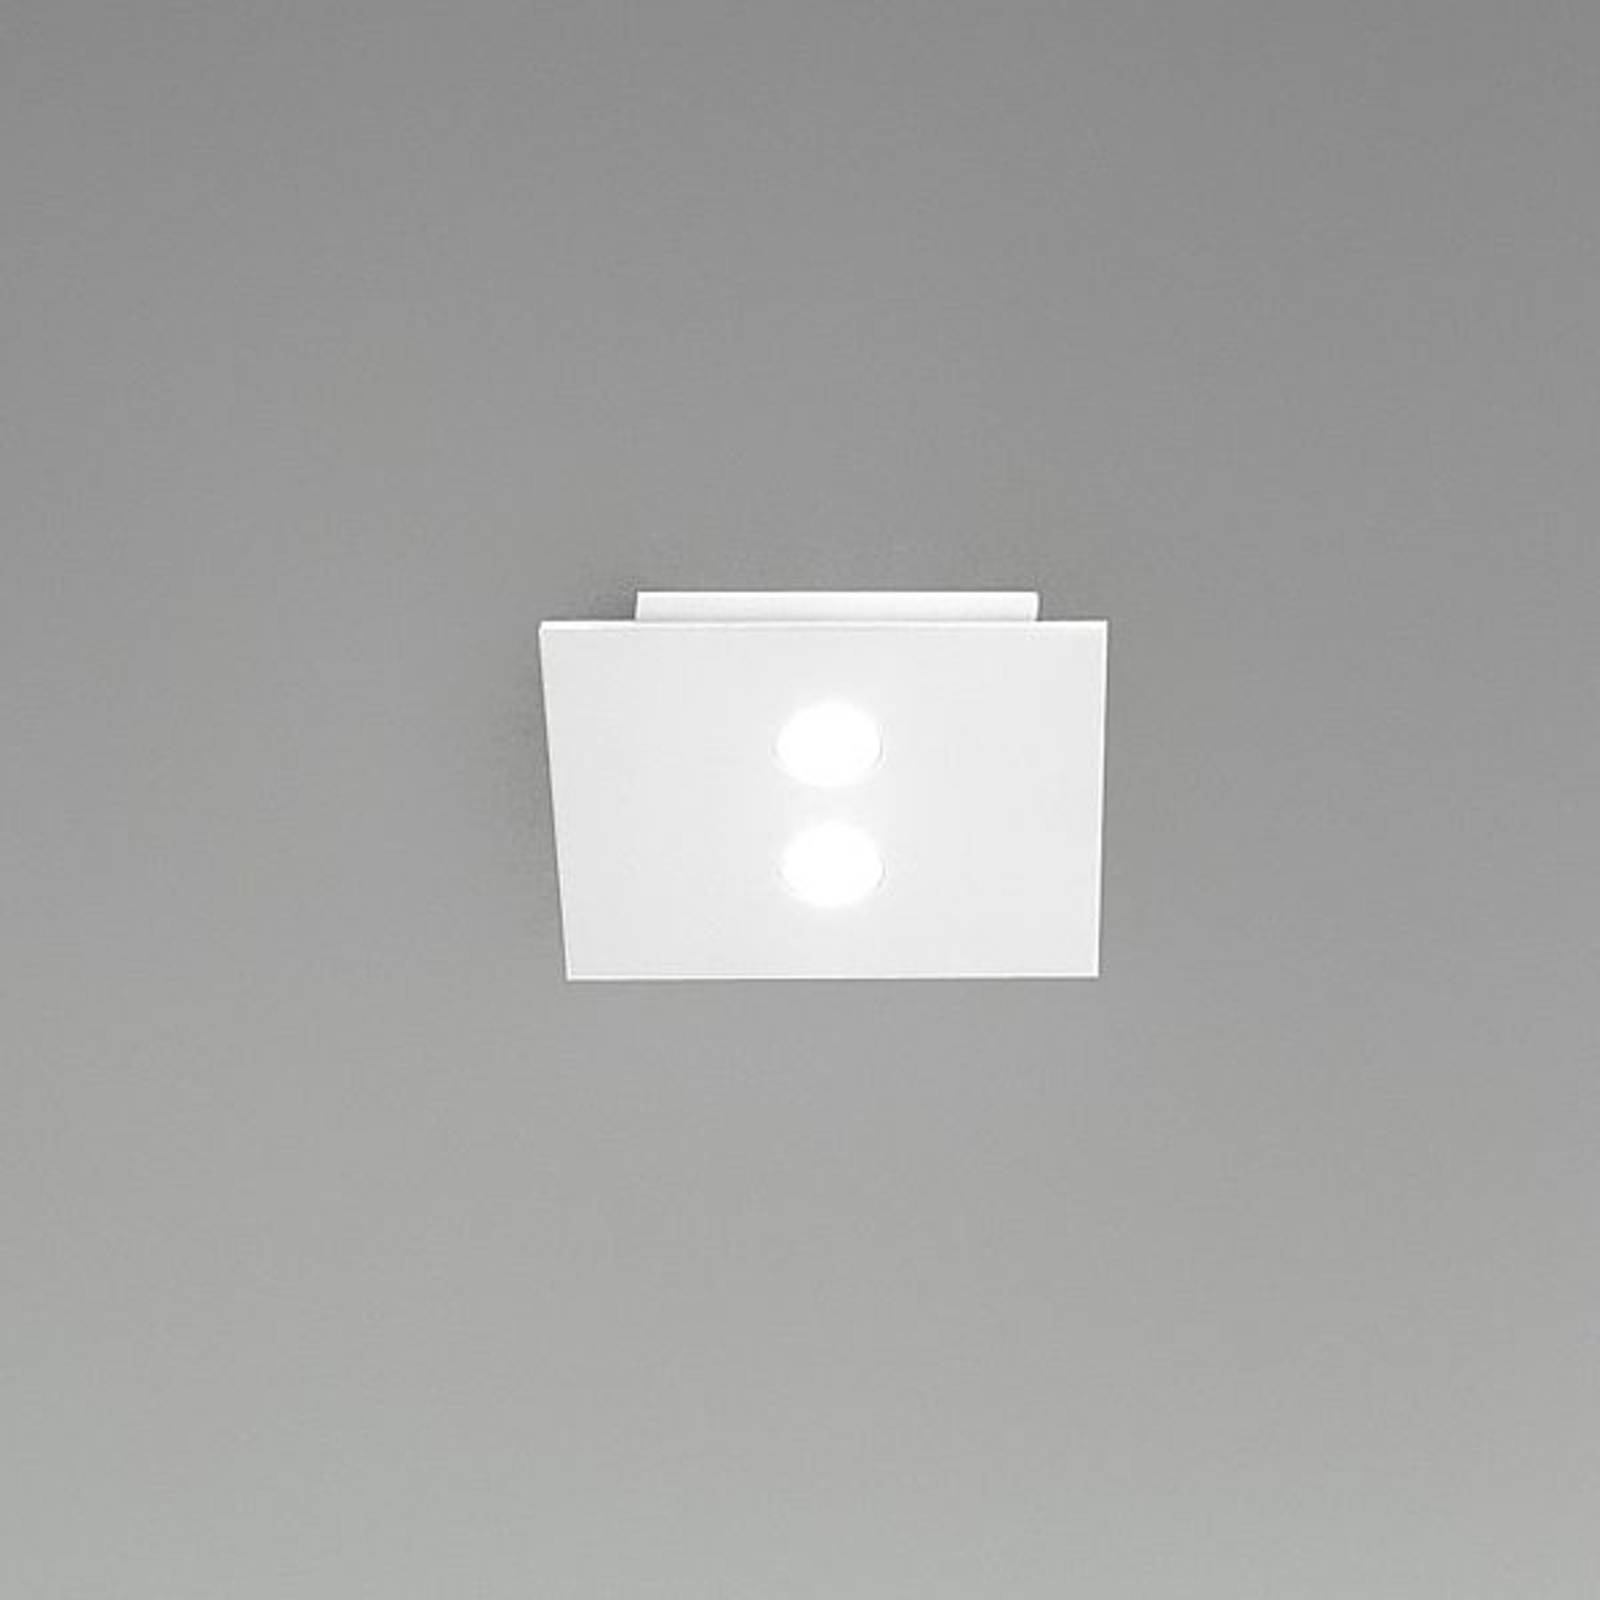 Icone slim - kis led mennyezeti lámpa 2-lámpás, fehér színű